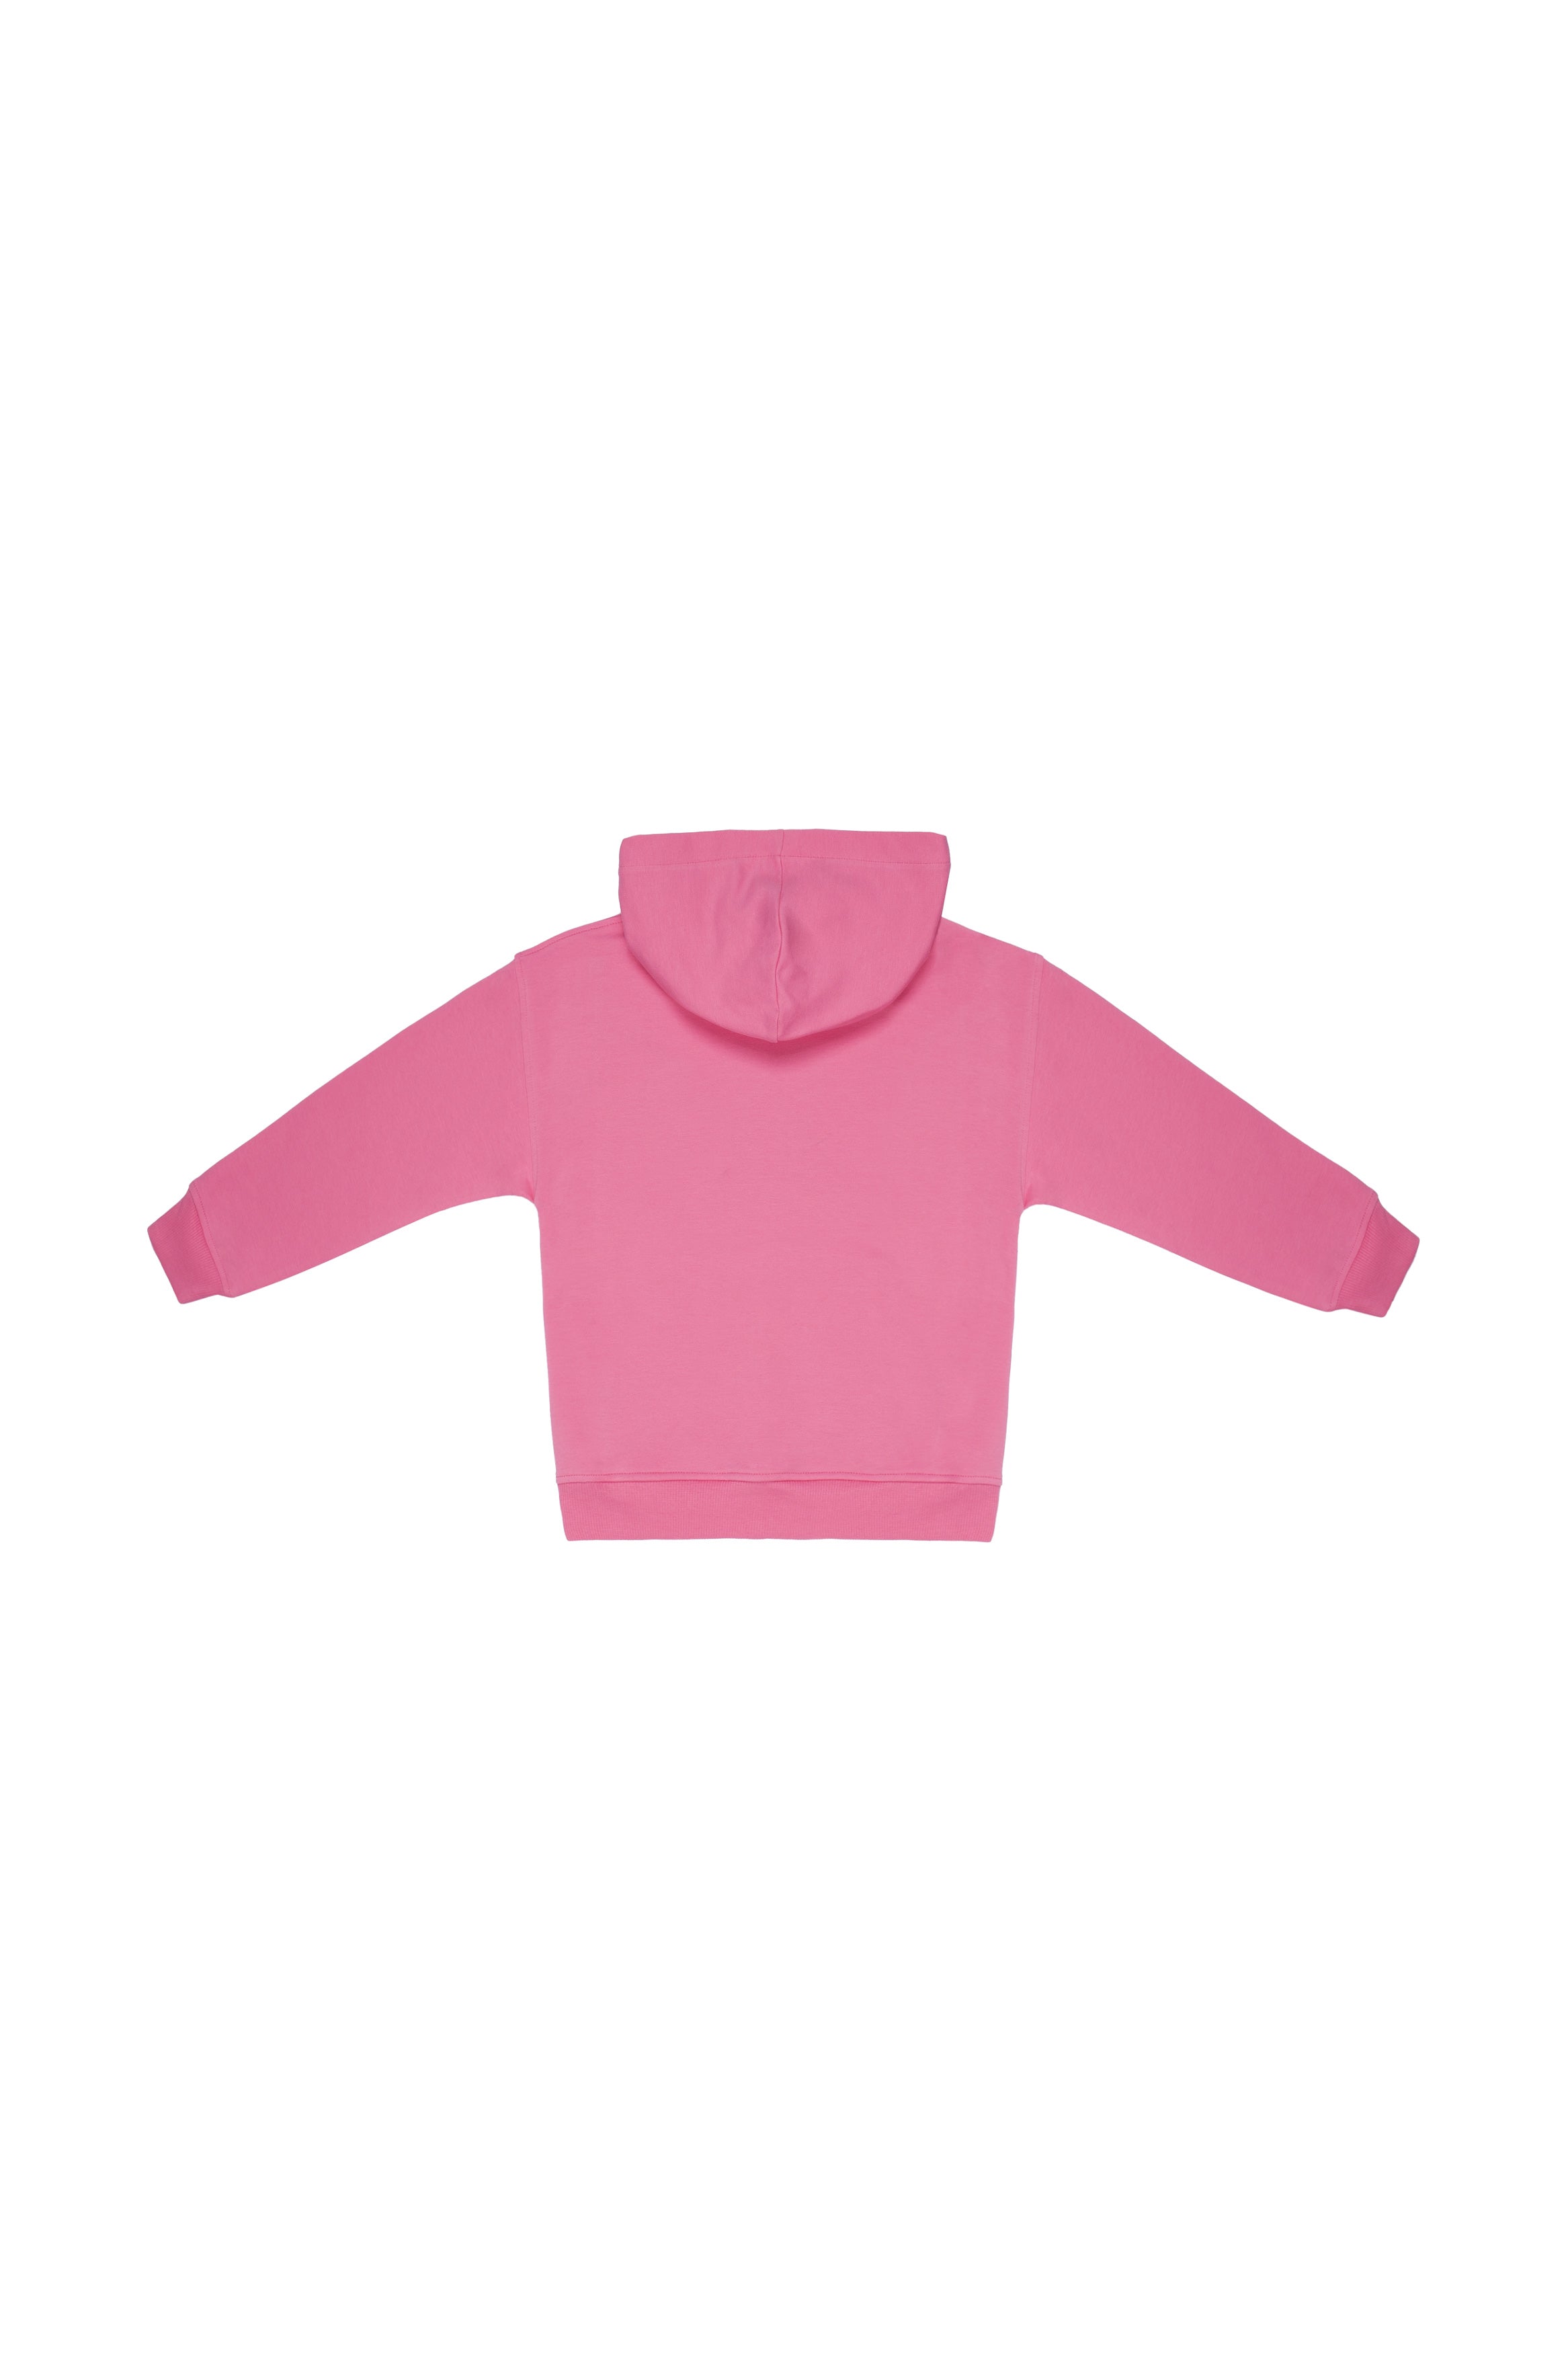 Girls Dark Pink Hooded Cotton Sweatshirt